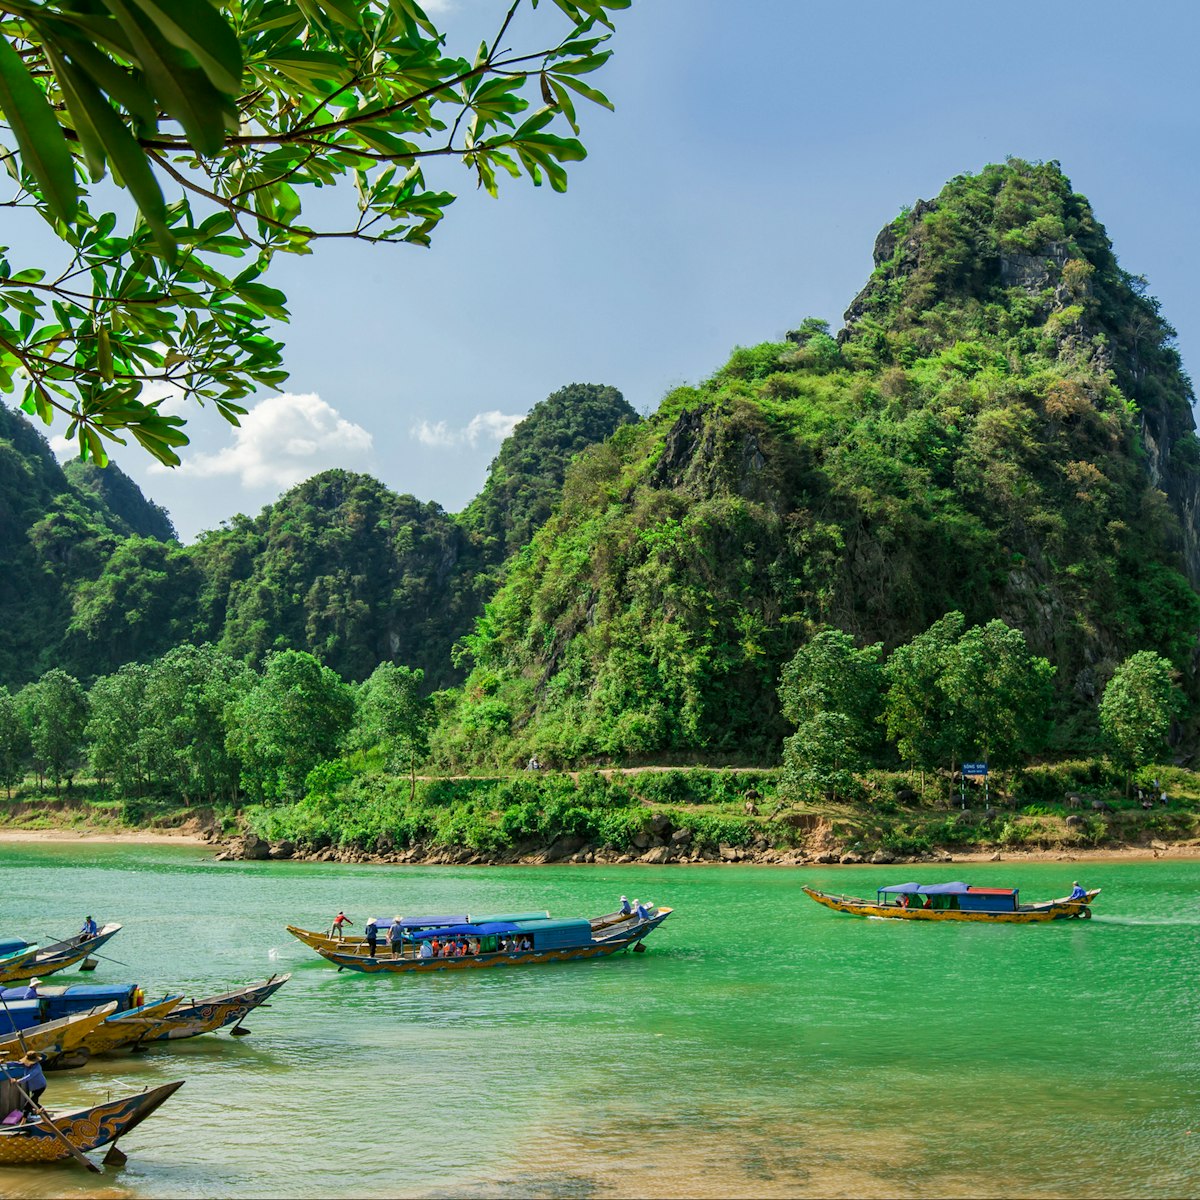 Boats at Phong Nha Ke Bang National Park.
